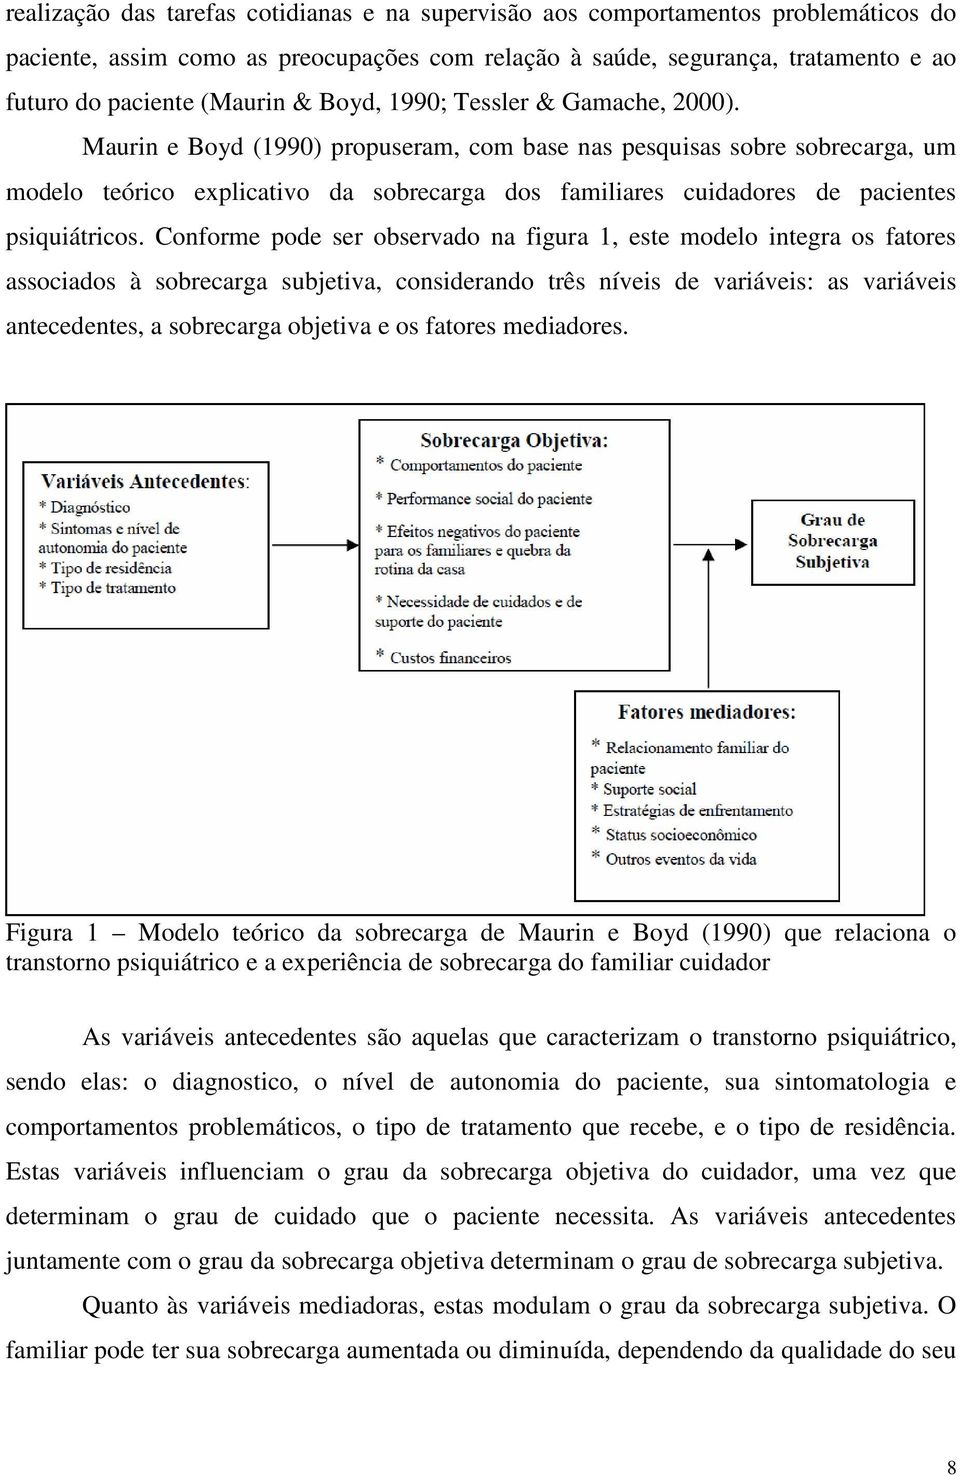 Maurin e Boyd (1990) propuseram, com base nas pesquisas sobre sobrecarga, um modelo teórico explicativo da sobrecarga dos familiares cuidadores de pacientes psiquiátricos.